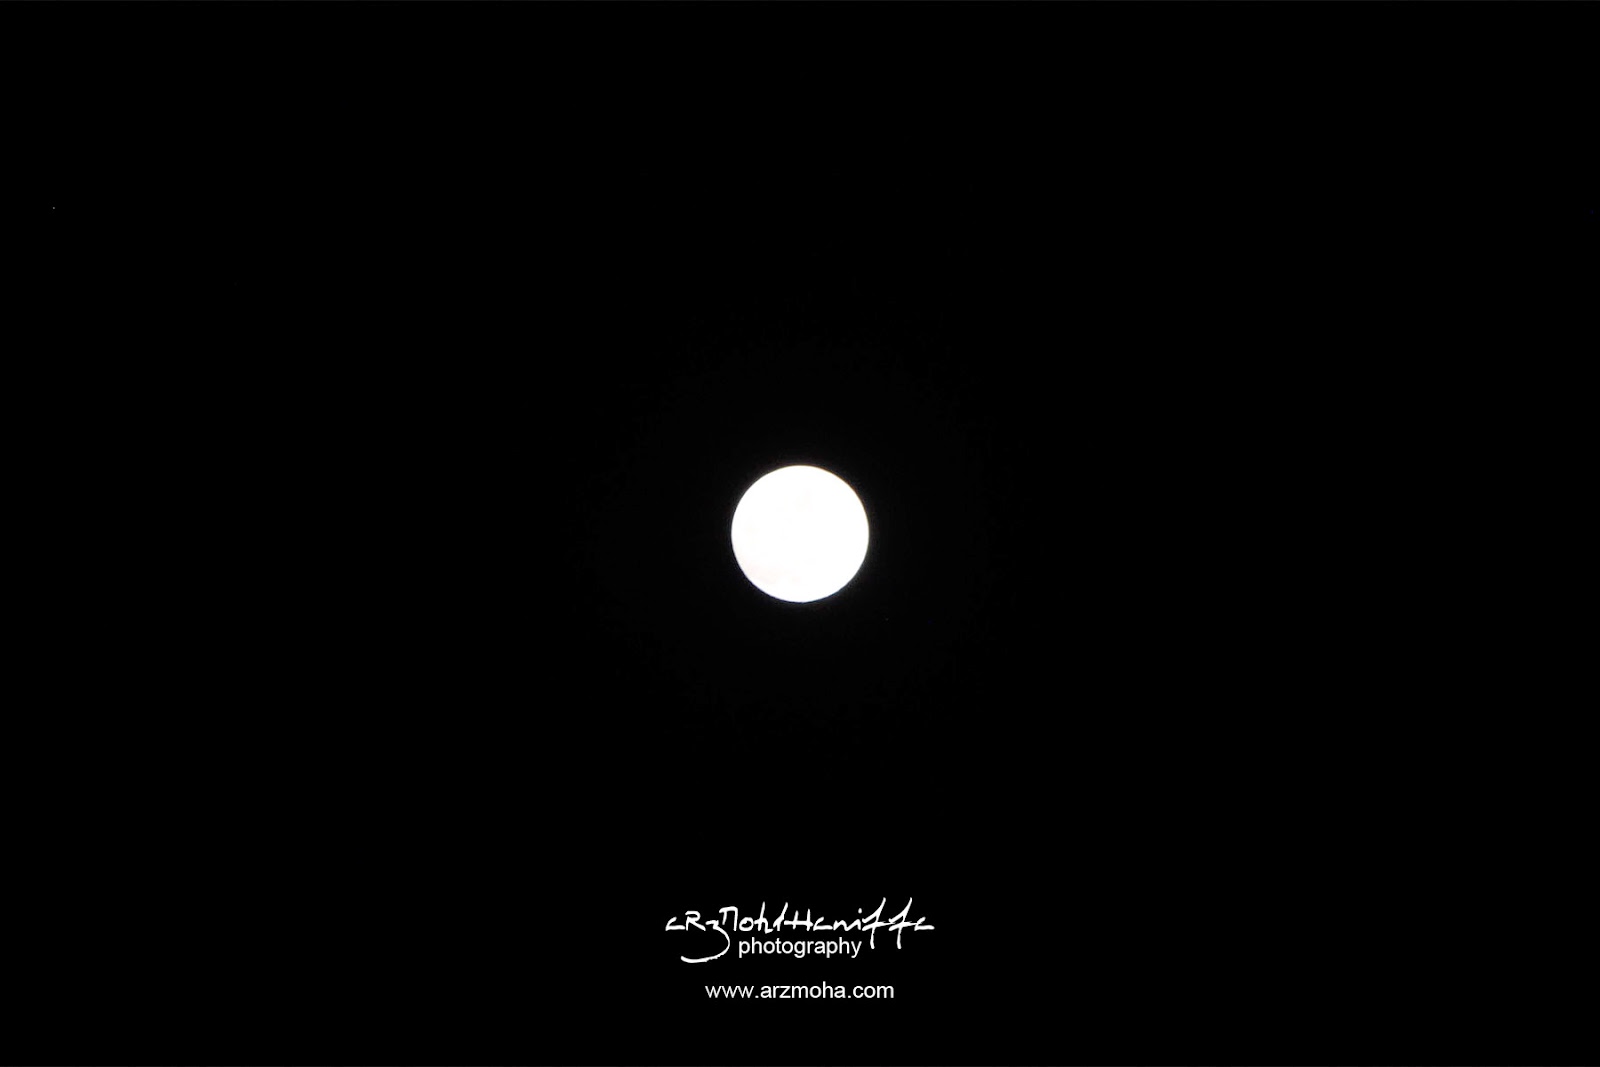 Bulan mengambang, bulan penuh, full moon, arzmoha.com, gambar cantik, arzmohdhaniffa photography, indahnya bulan